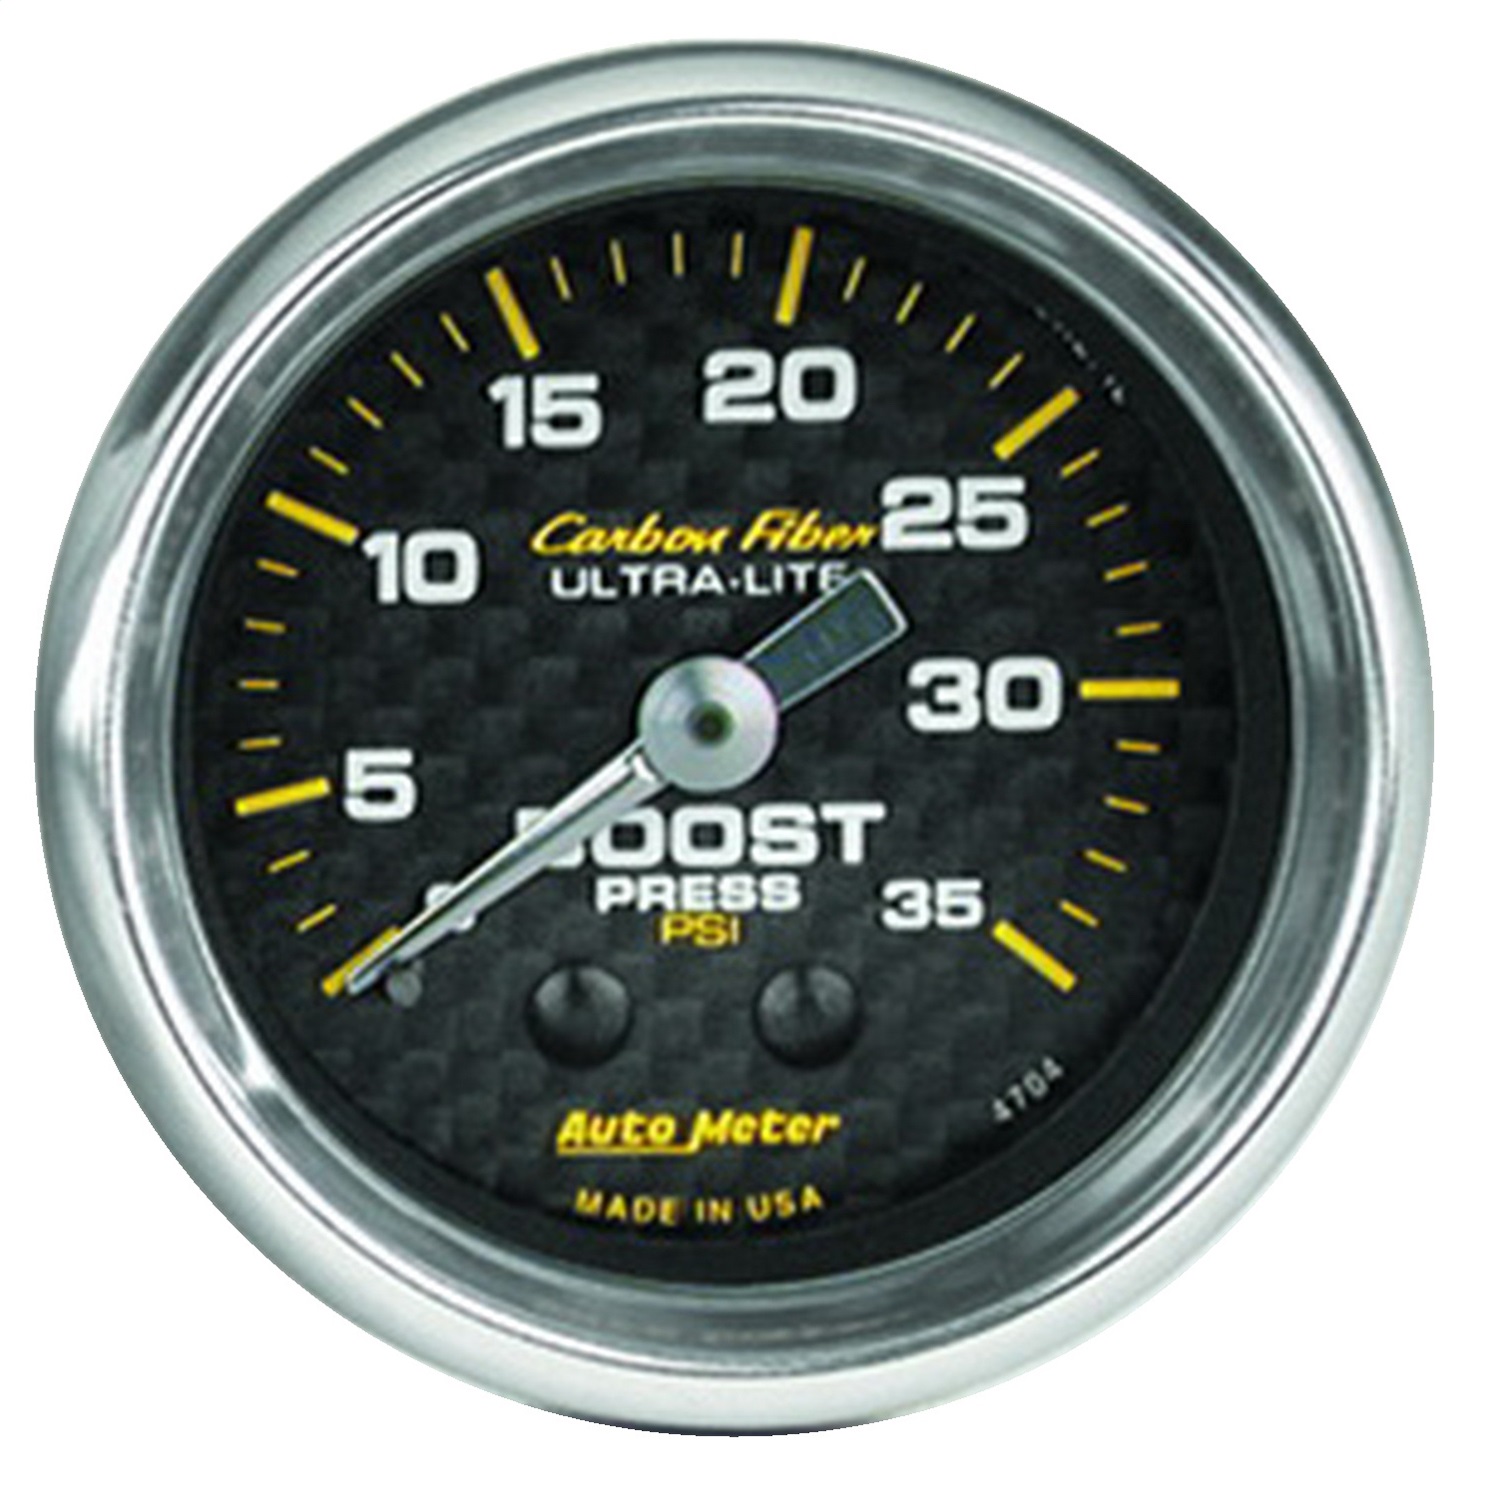 Auto Meter Auto Meter 4704 Carbon Fiber; Mechanical Boost Gauge